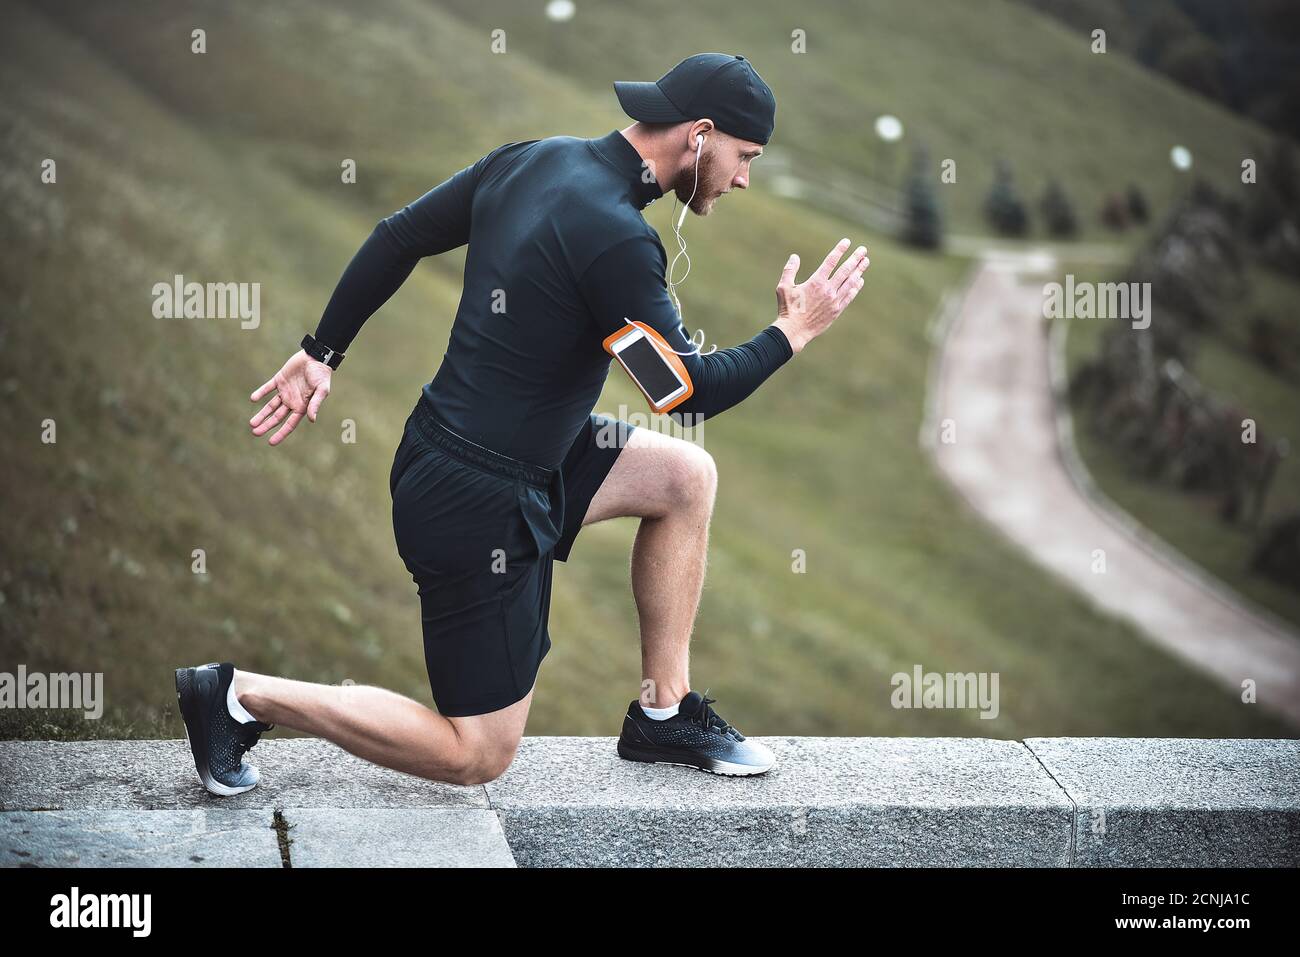 Muskulöse Sportler Stretching vor dem Sport Ausbildung an der Straße im City Park Stockfoto